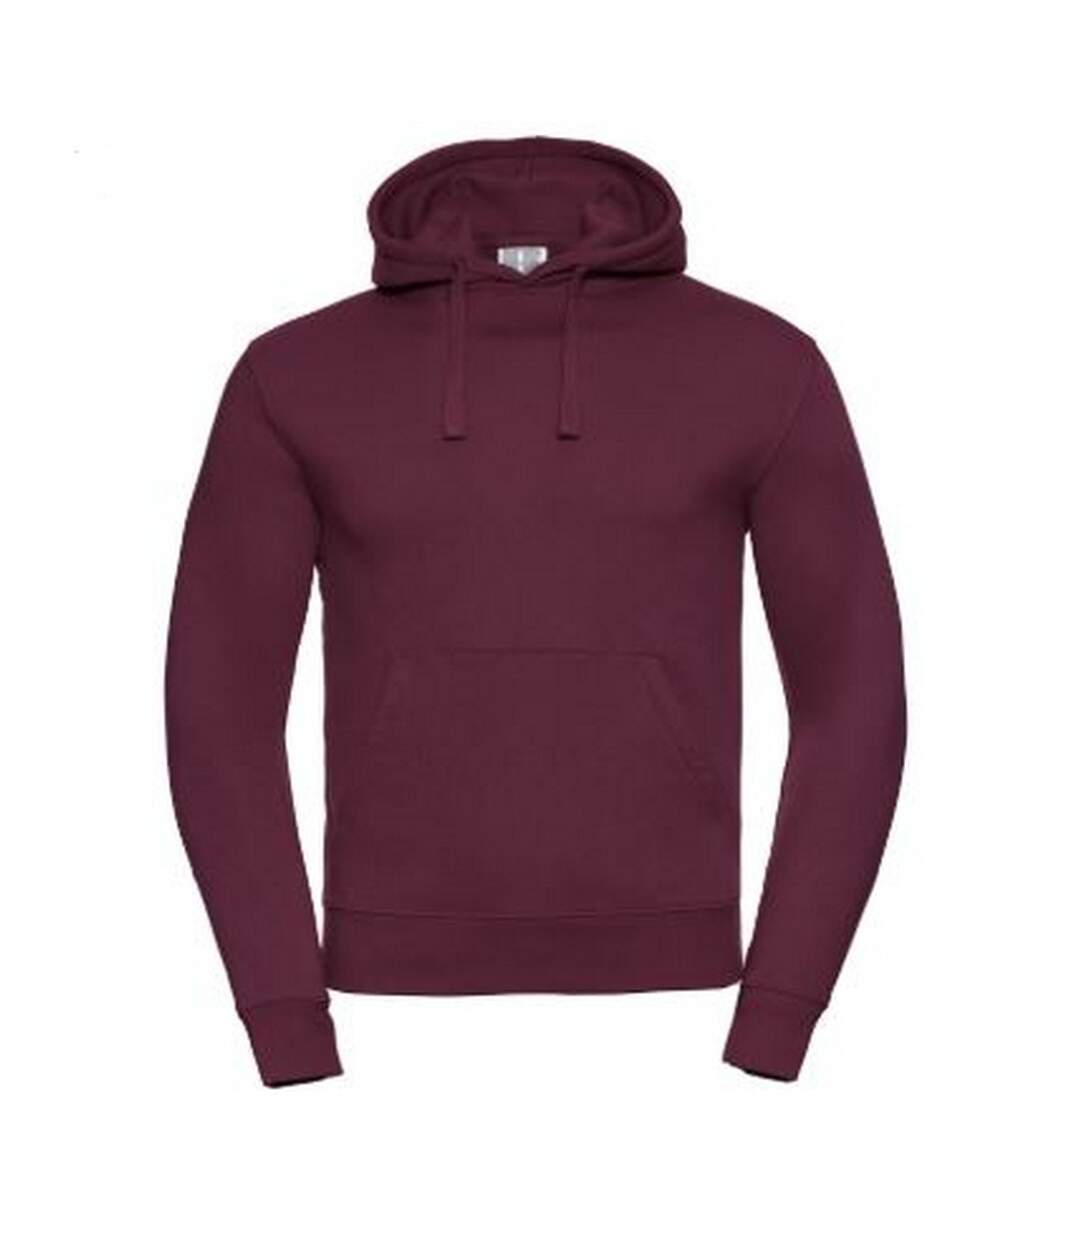 Russell Mens Authentic Hooded Sweatshirt / Hoodie (Burgundy) - UTBC1498